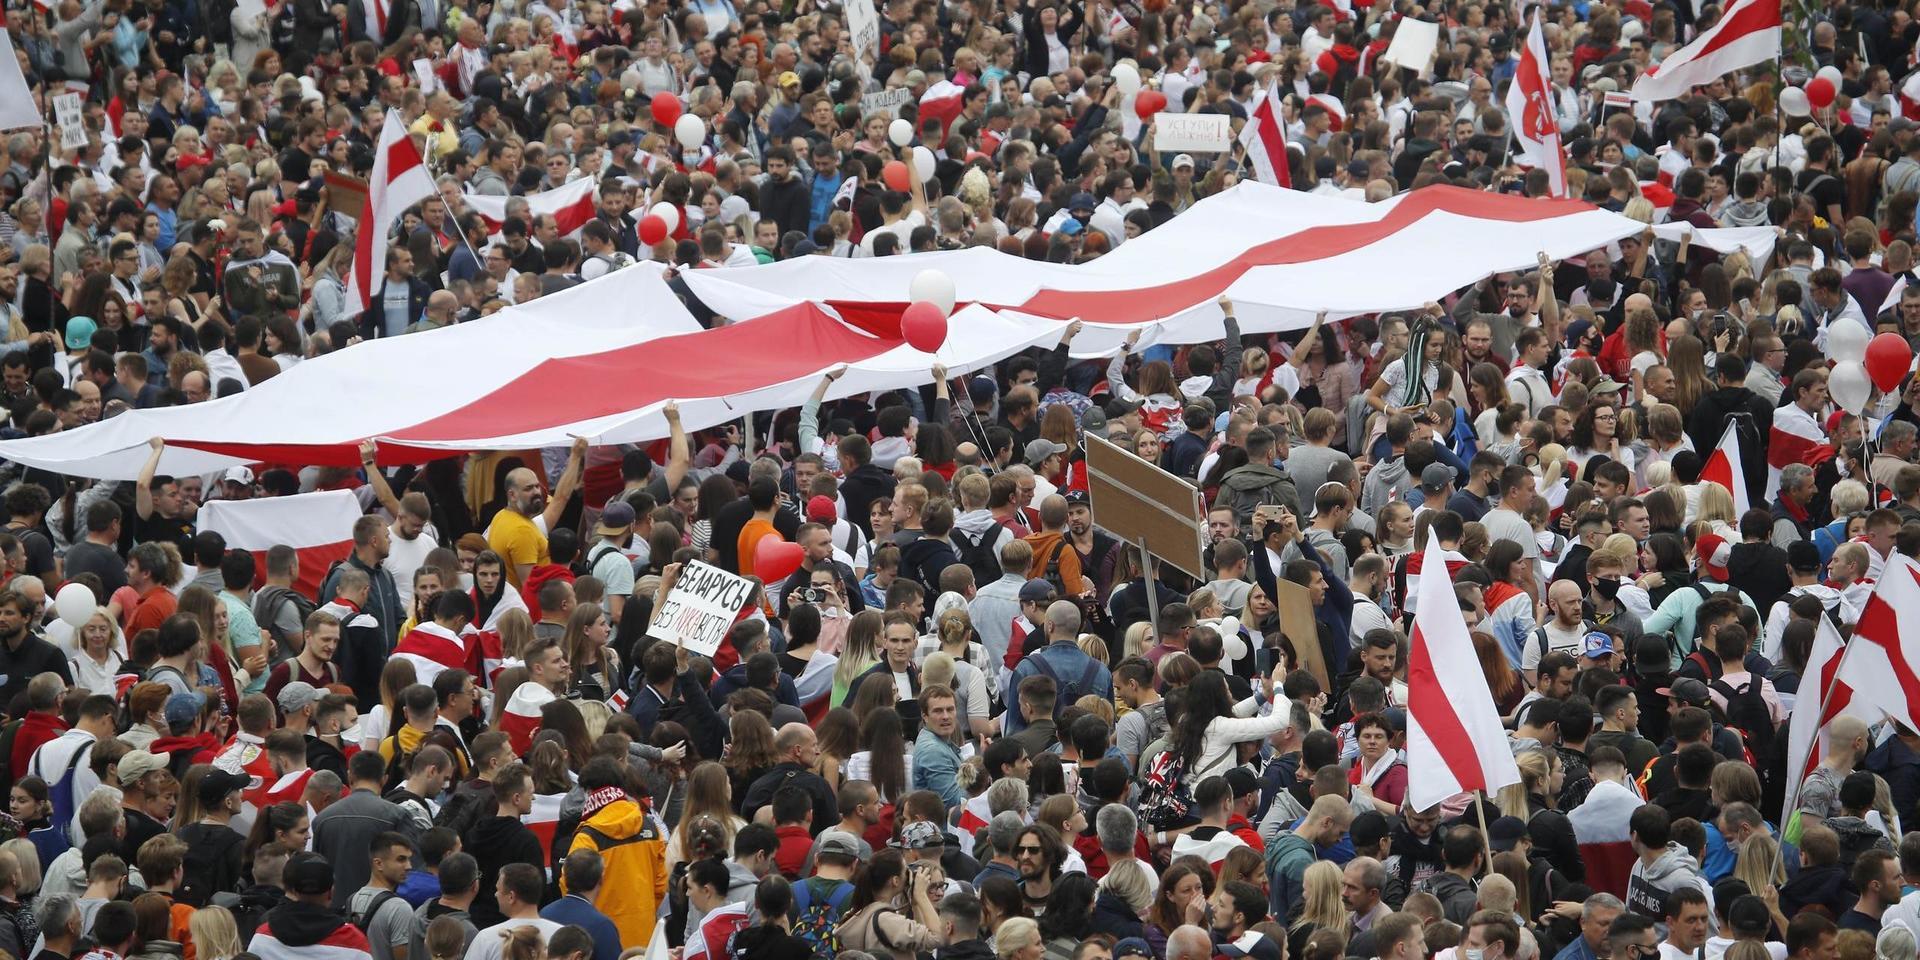 Tiotusentals demonstranter har samlats på Självständighetstorget i Minsk med oppositionens röd-vita flaggor.